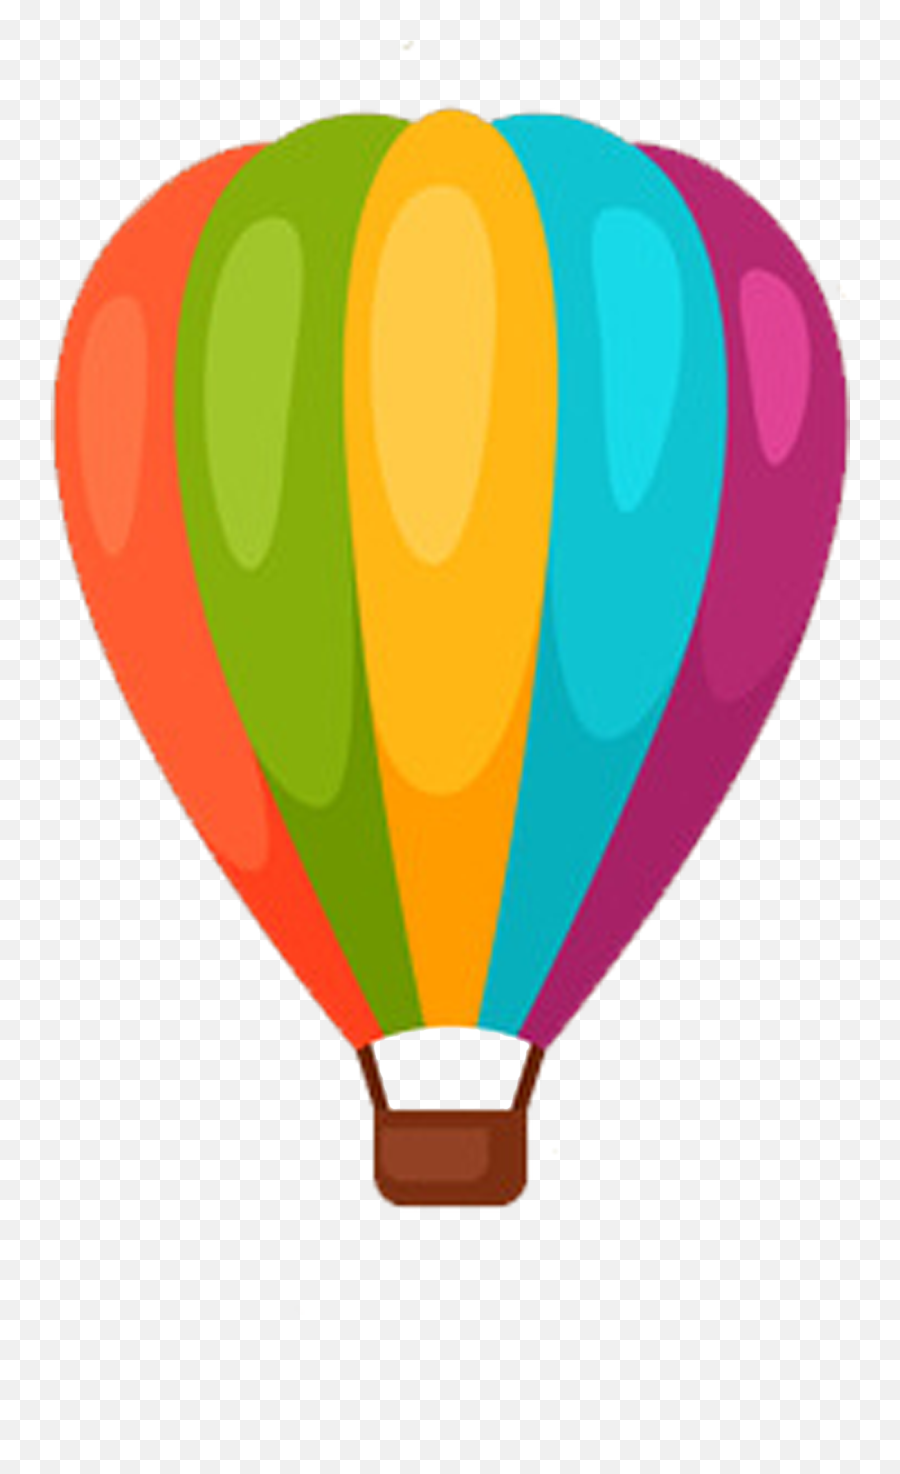 Gas Clipart Air Ballon - Air Balloon Cartoon Png Transparent Hot Air Ballon Cartoon,On Air Png